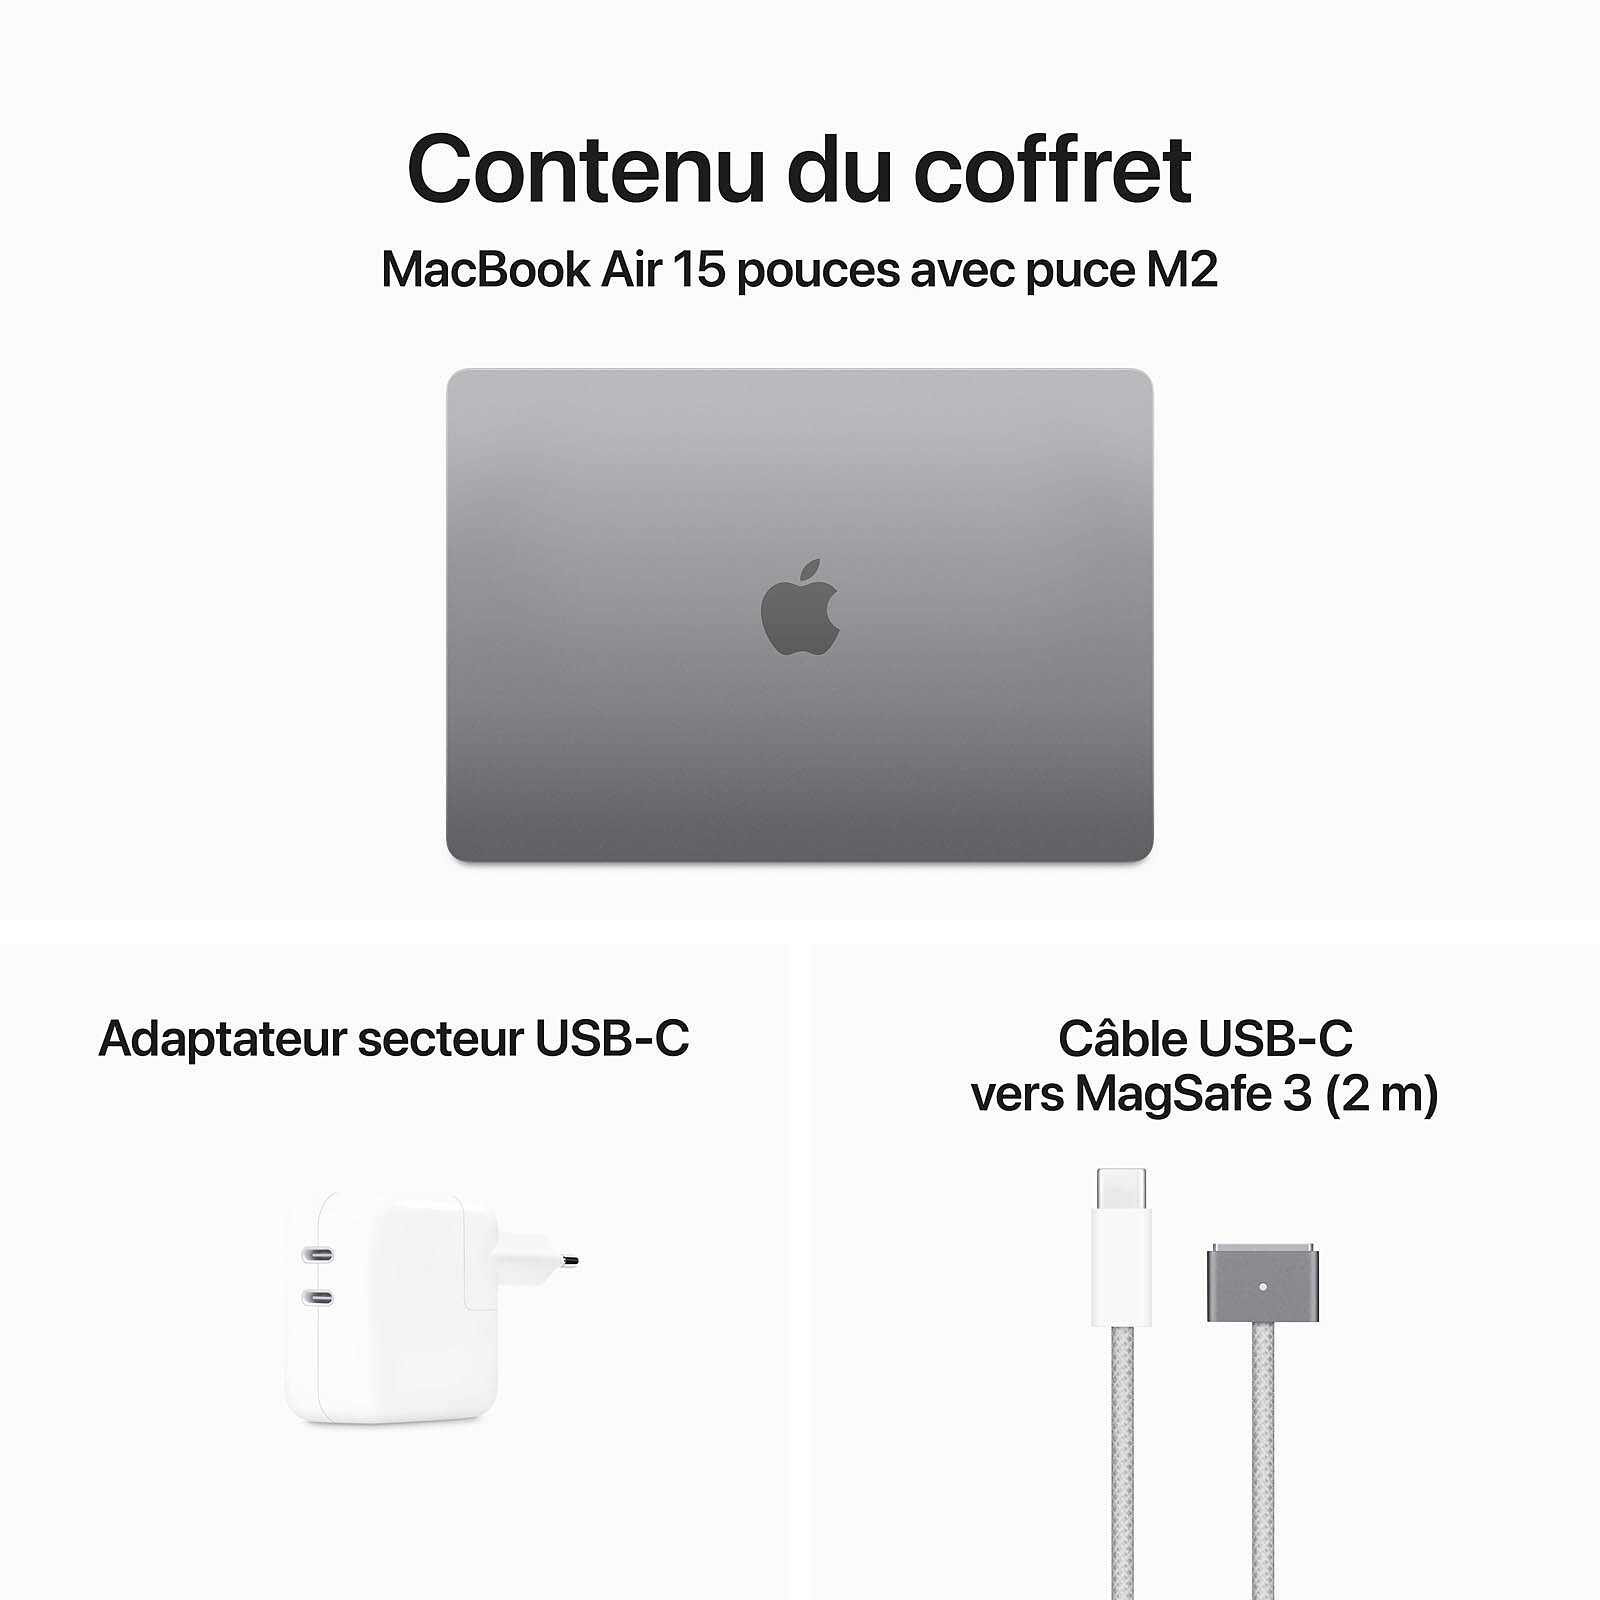 MacBook Air 15 pouces : date de sortie, prix et caractéristiques